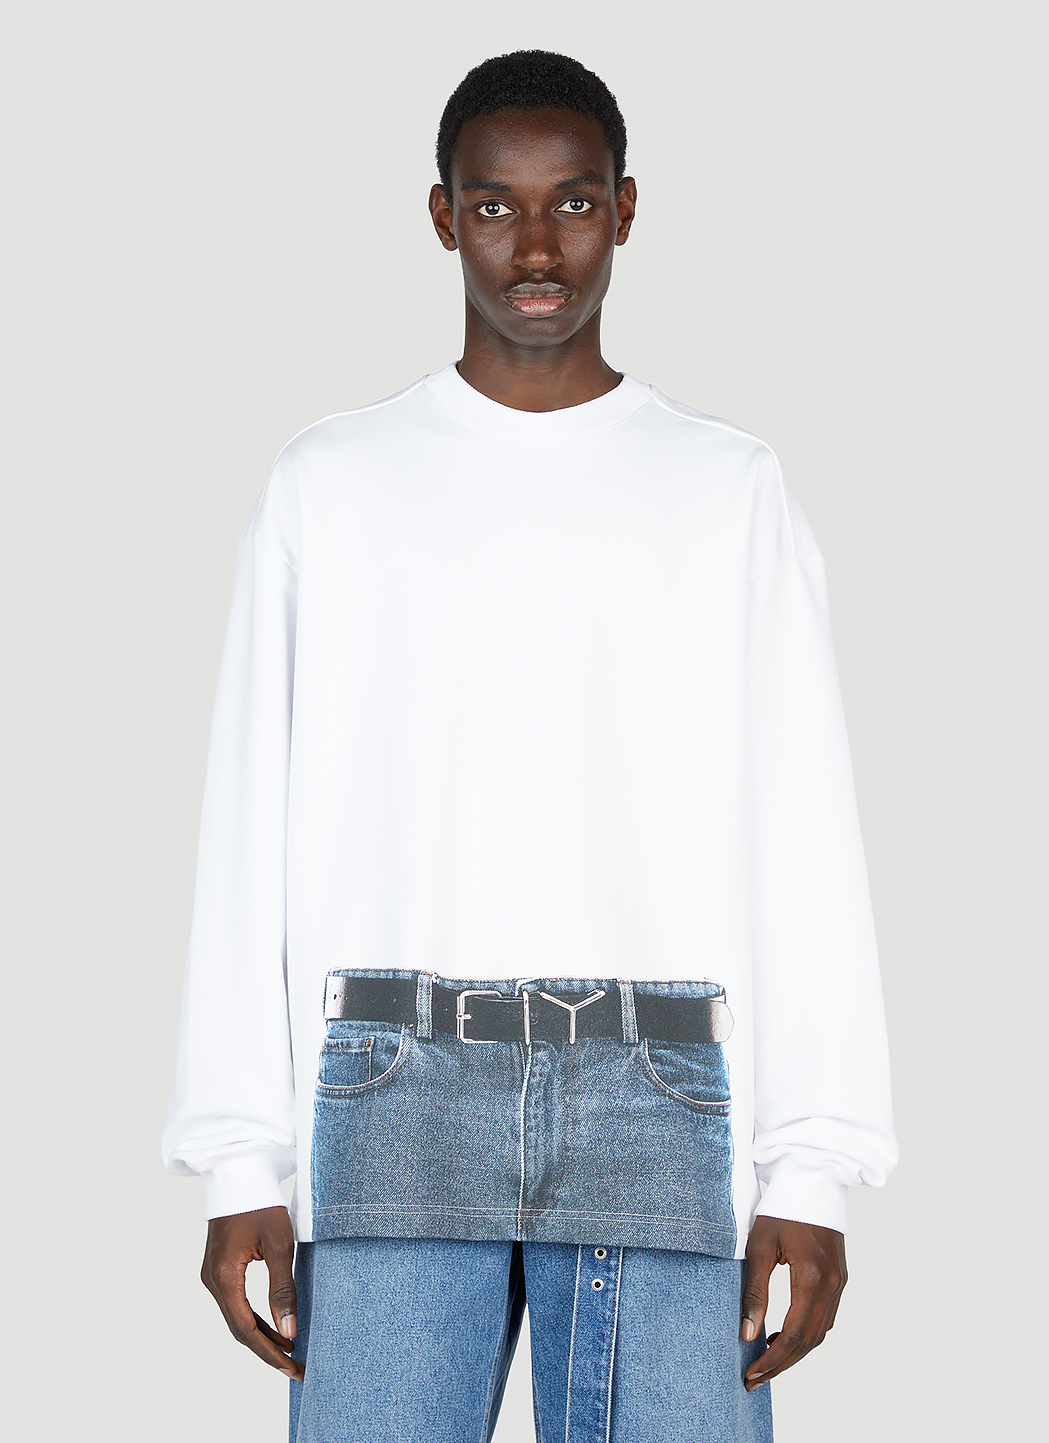 もも太郎出品アイテム一覧Y/Project × Jean Paul Gaultier メンズ Tシャツ